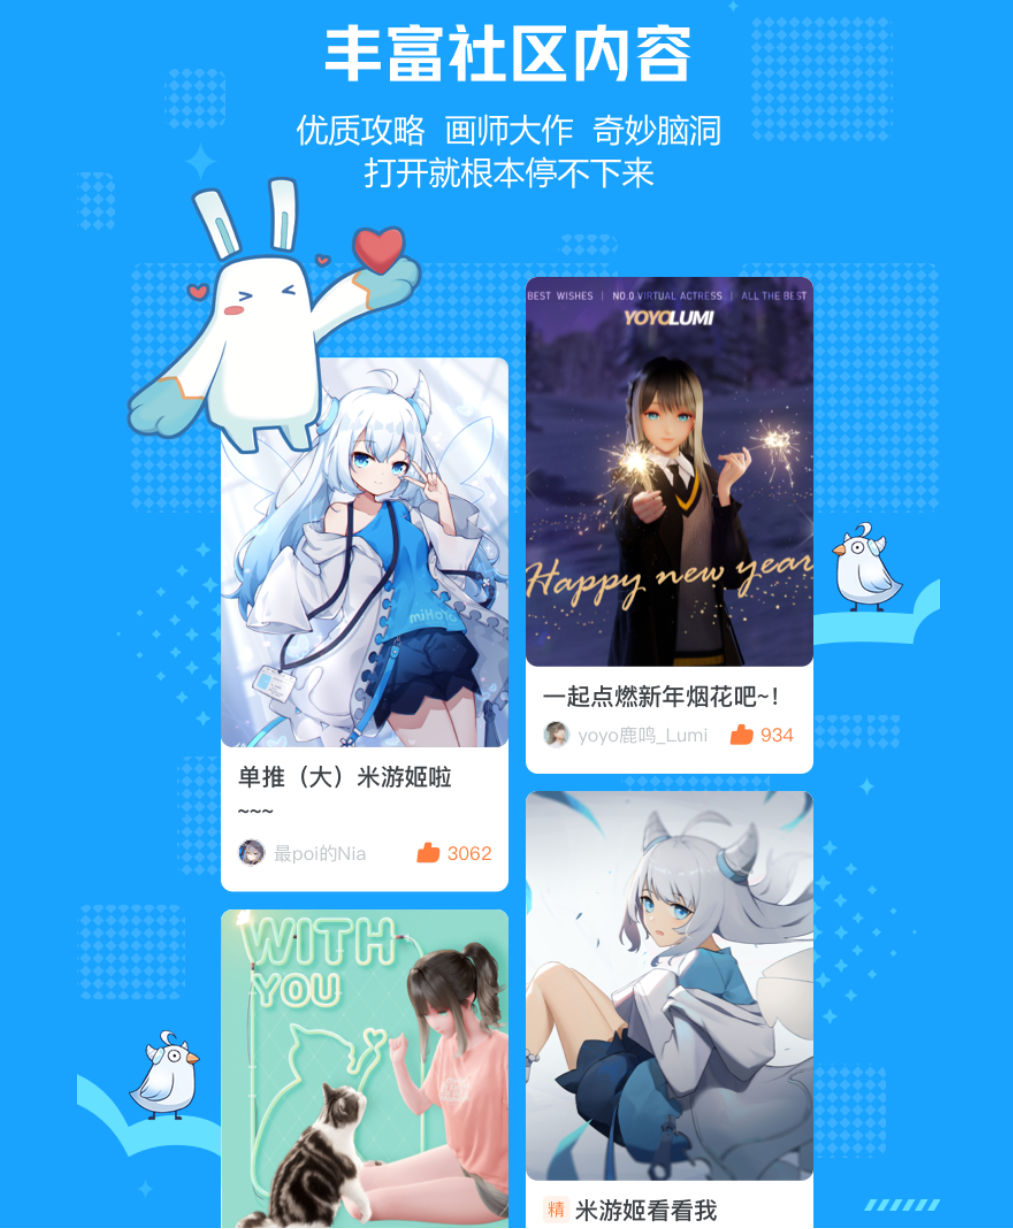 米游社App